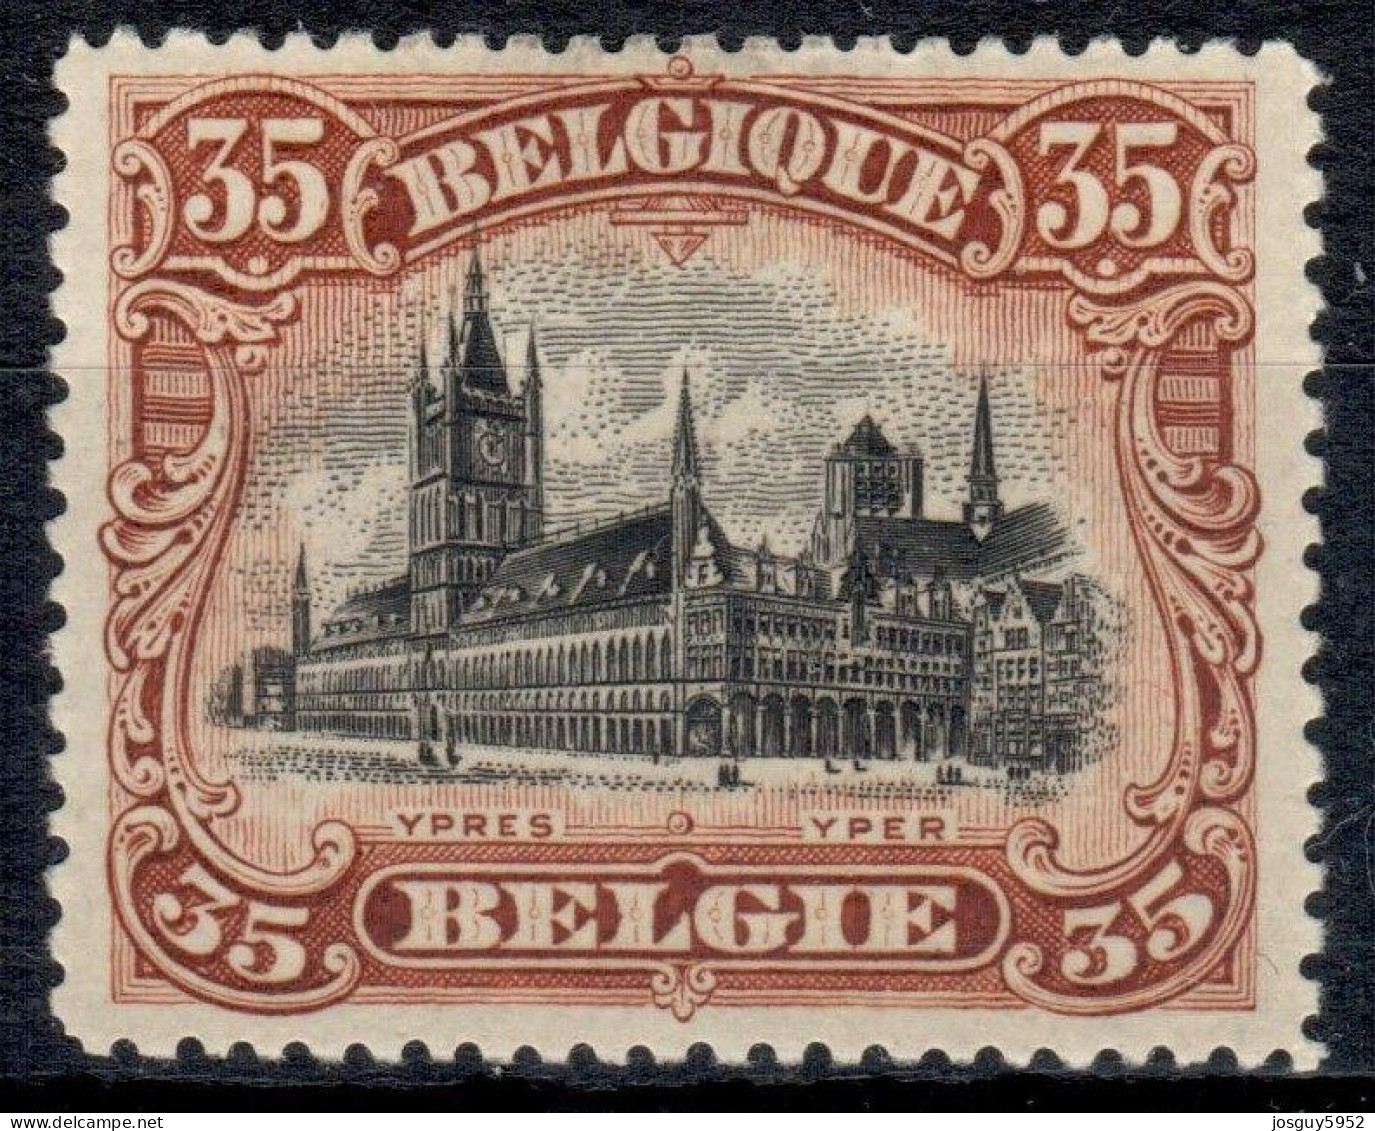 BELGIE 1915 - IEPER - DE HALLEN - N° 142 - MNH** - 1915-1920 Albert I.